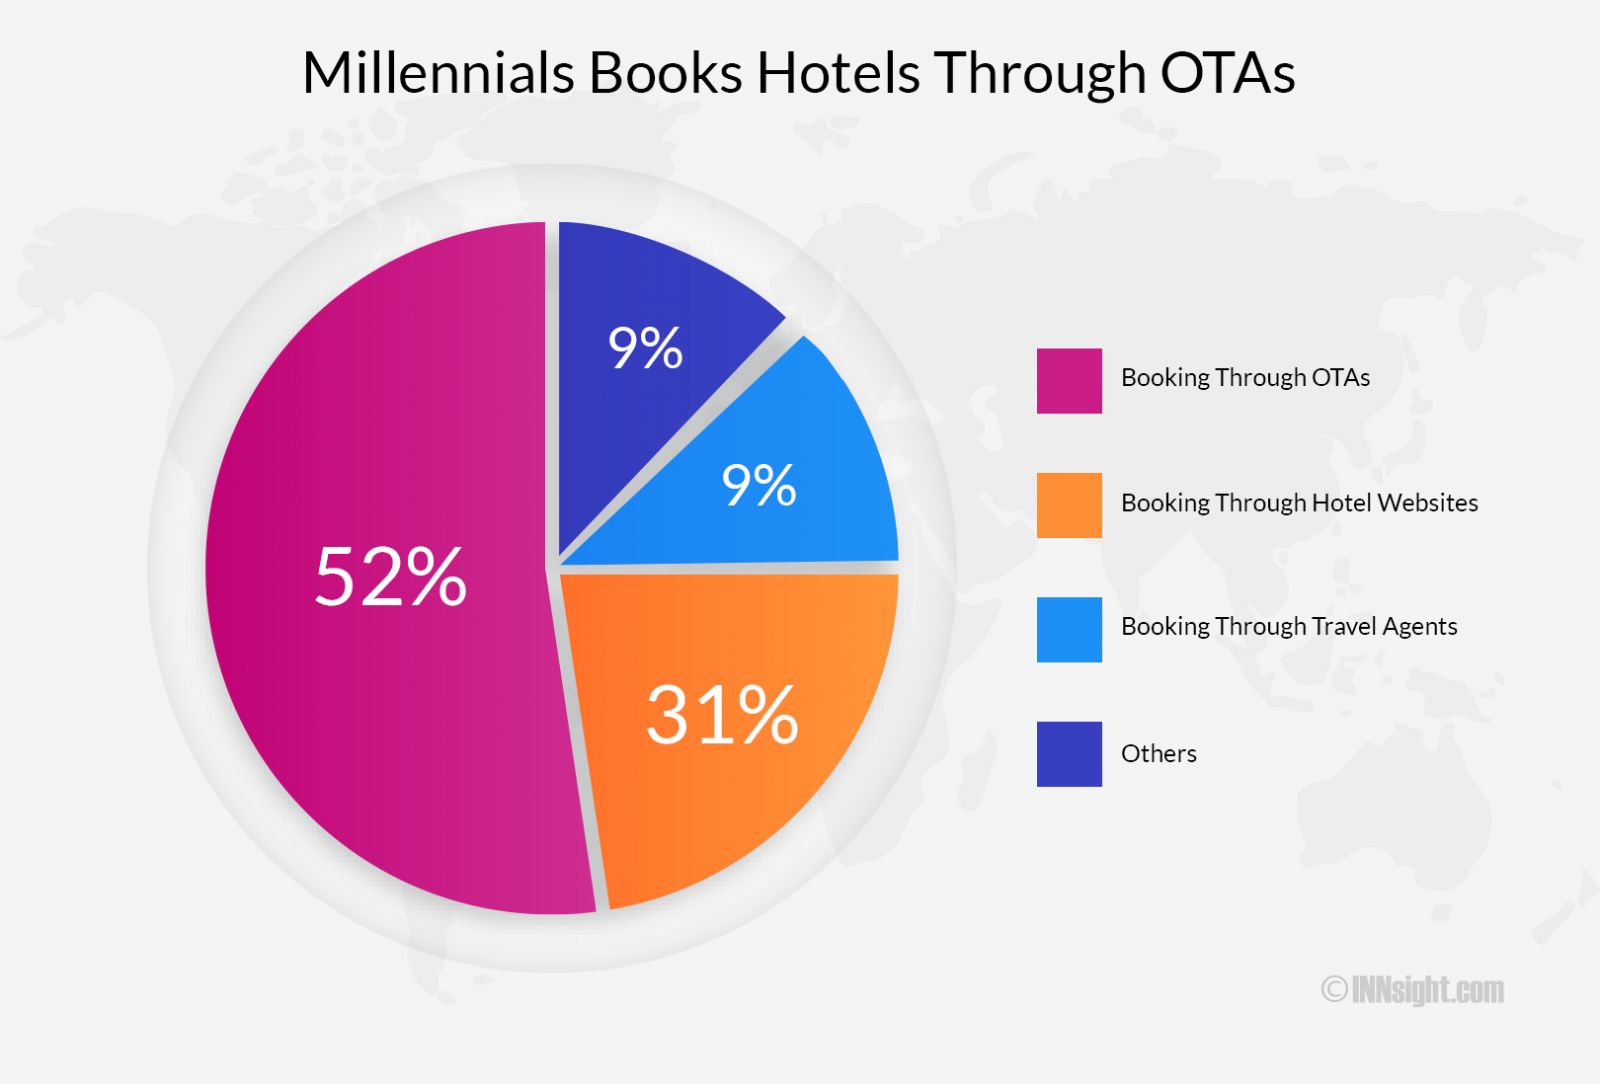 Millennials book hotels through OTAs